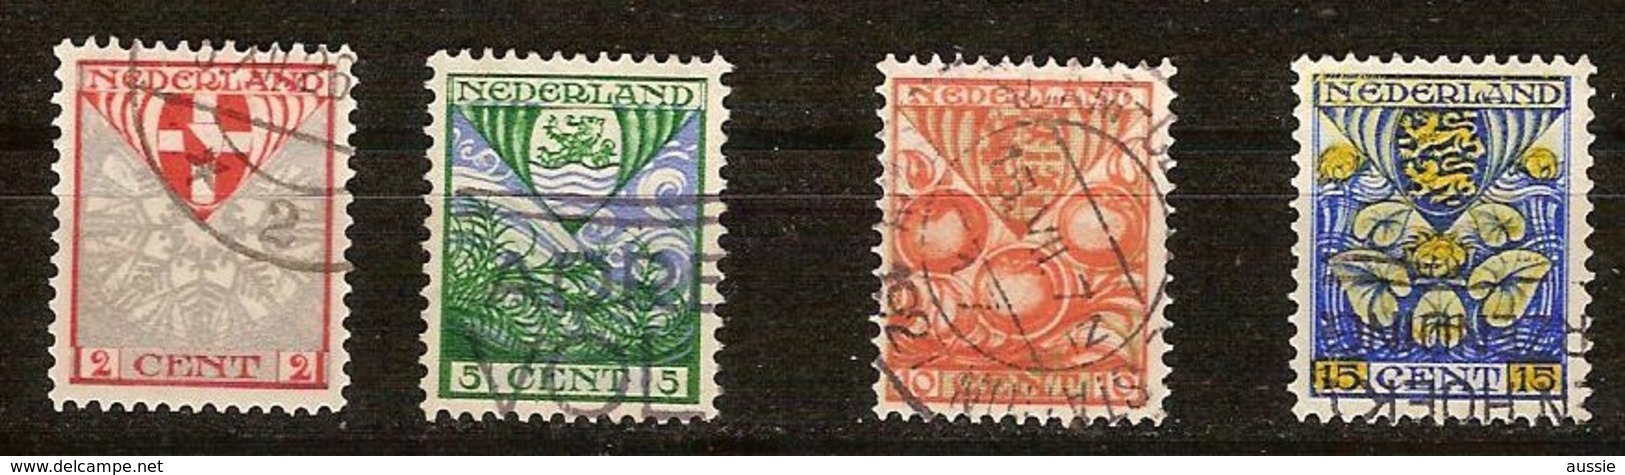 Pays-Bas Nederland 1926 Yvertn° 186-189 (°) Oblitéré Used Cote 11,00 Euro - Oblitérés